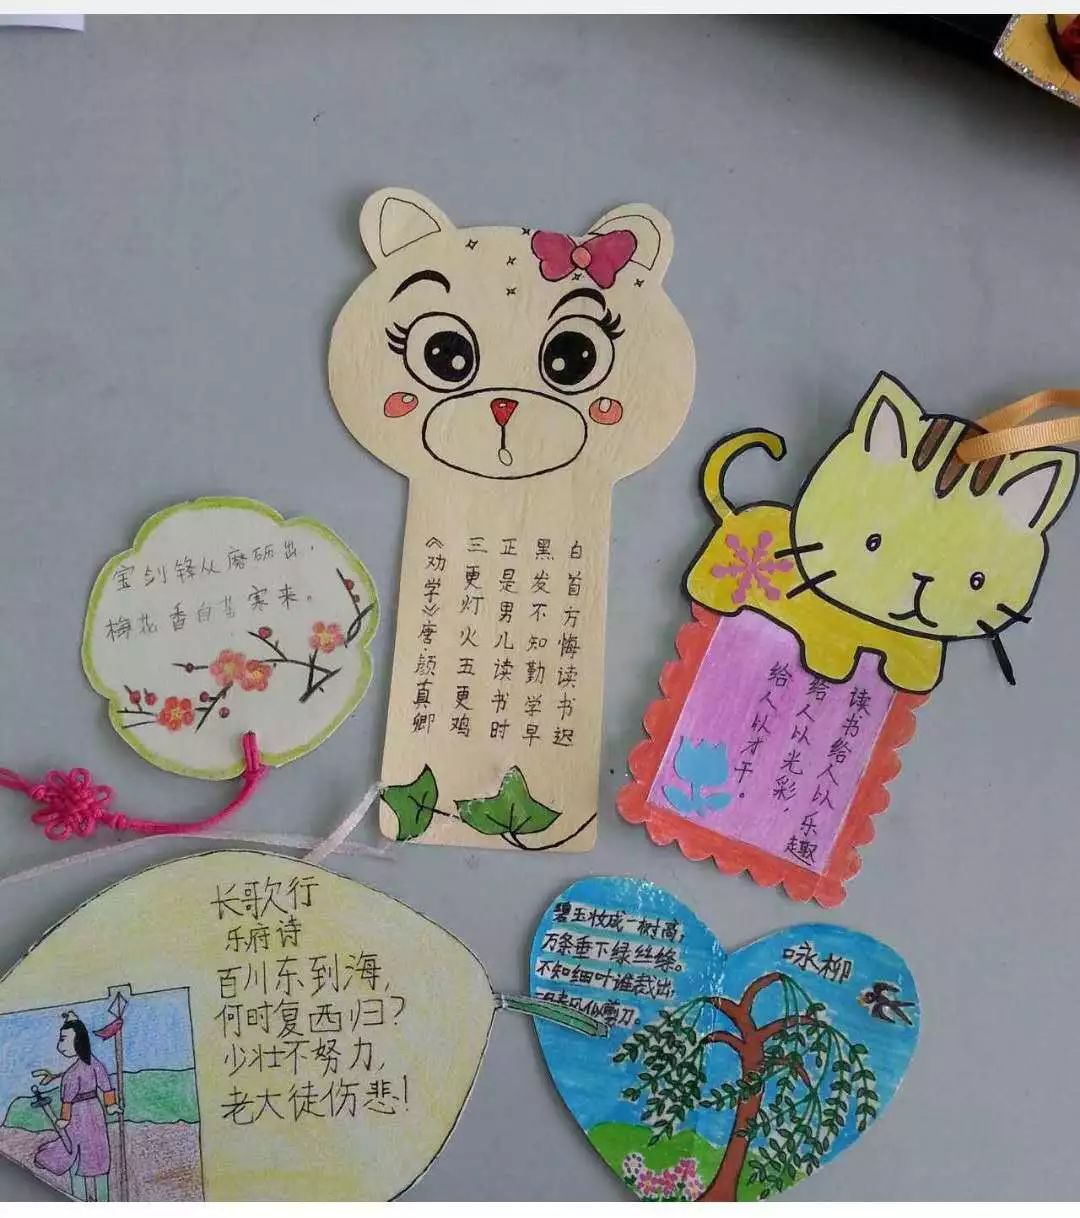 亲子阅读 书签为证——崇仁县中山实验小学一,二年级学生亲子阅读侧记